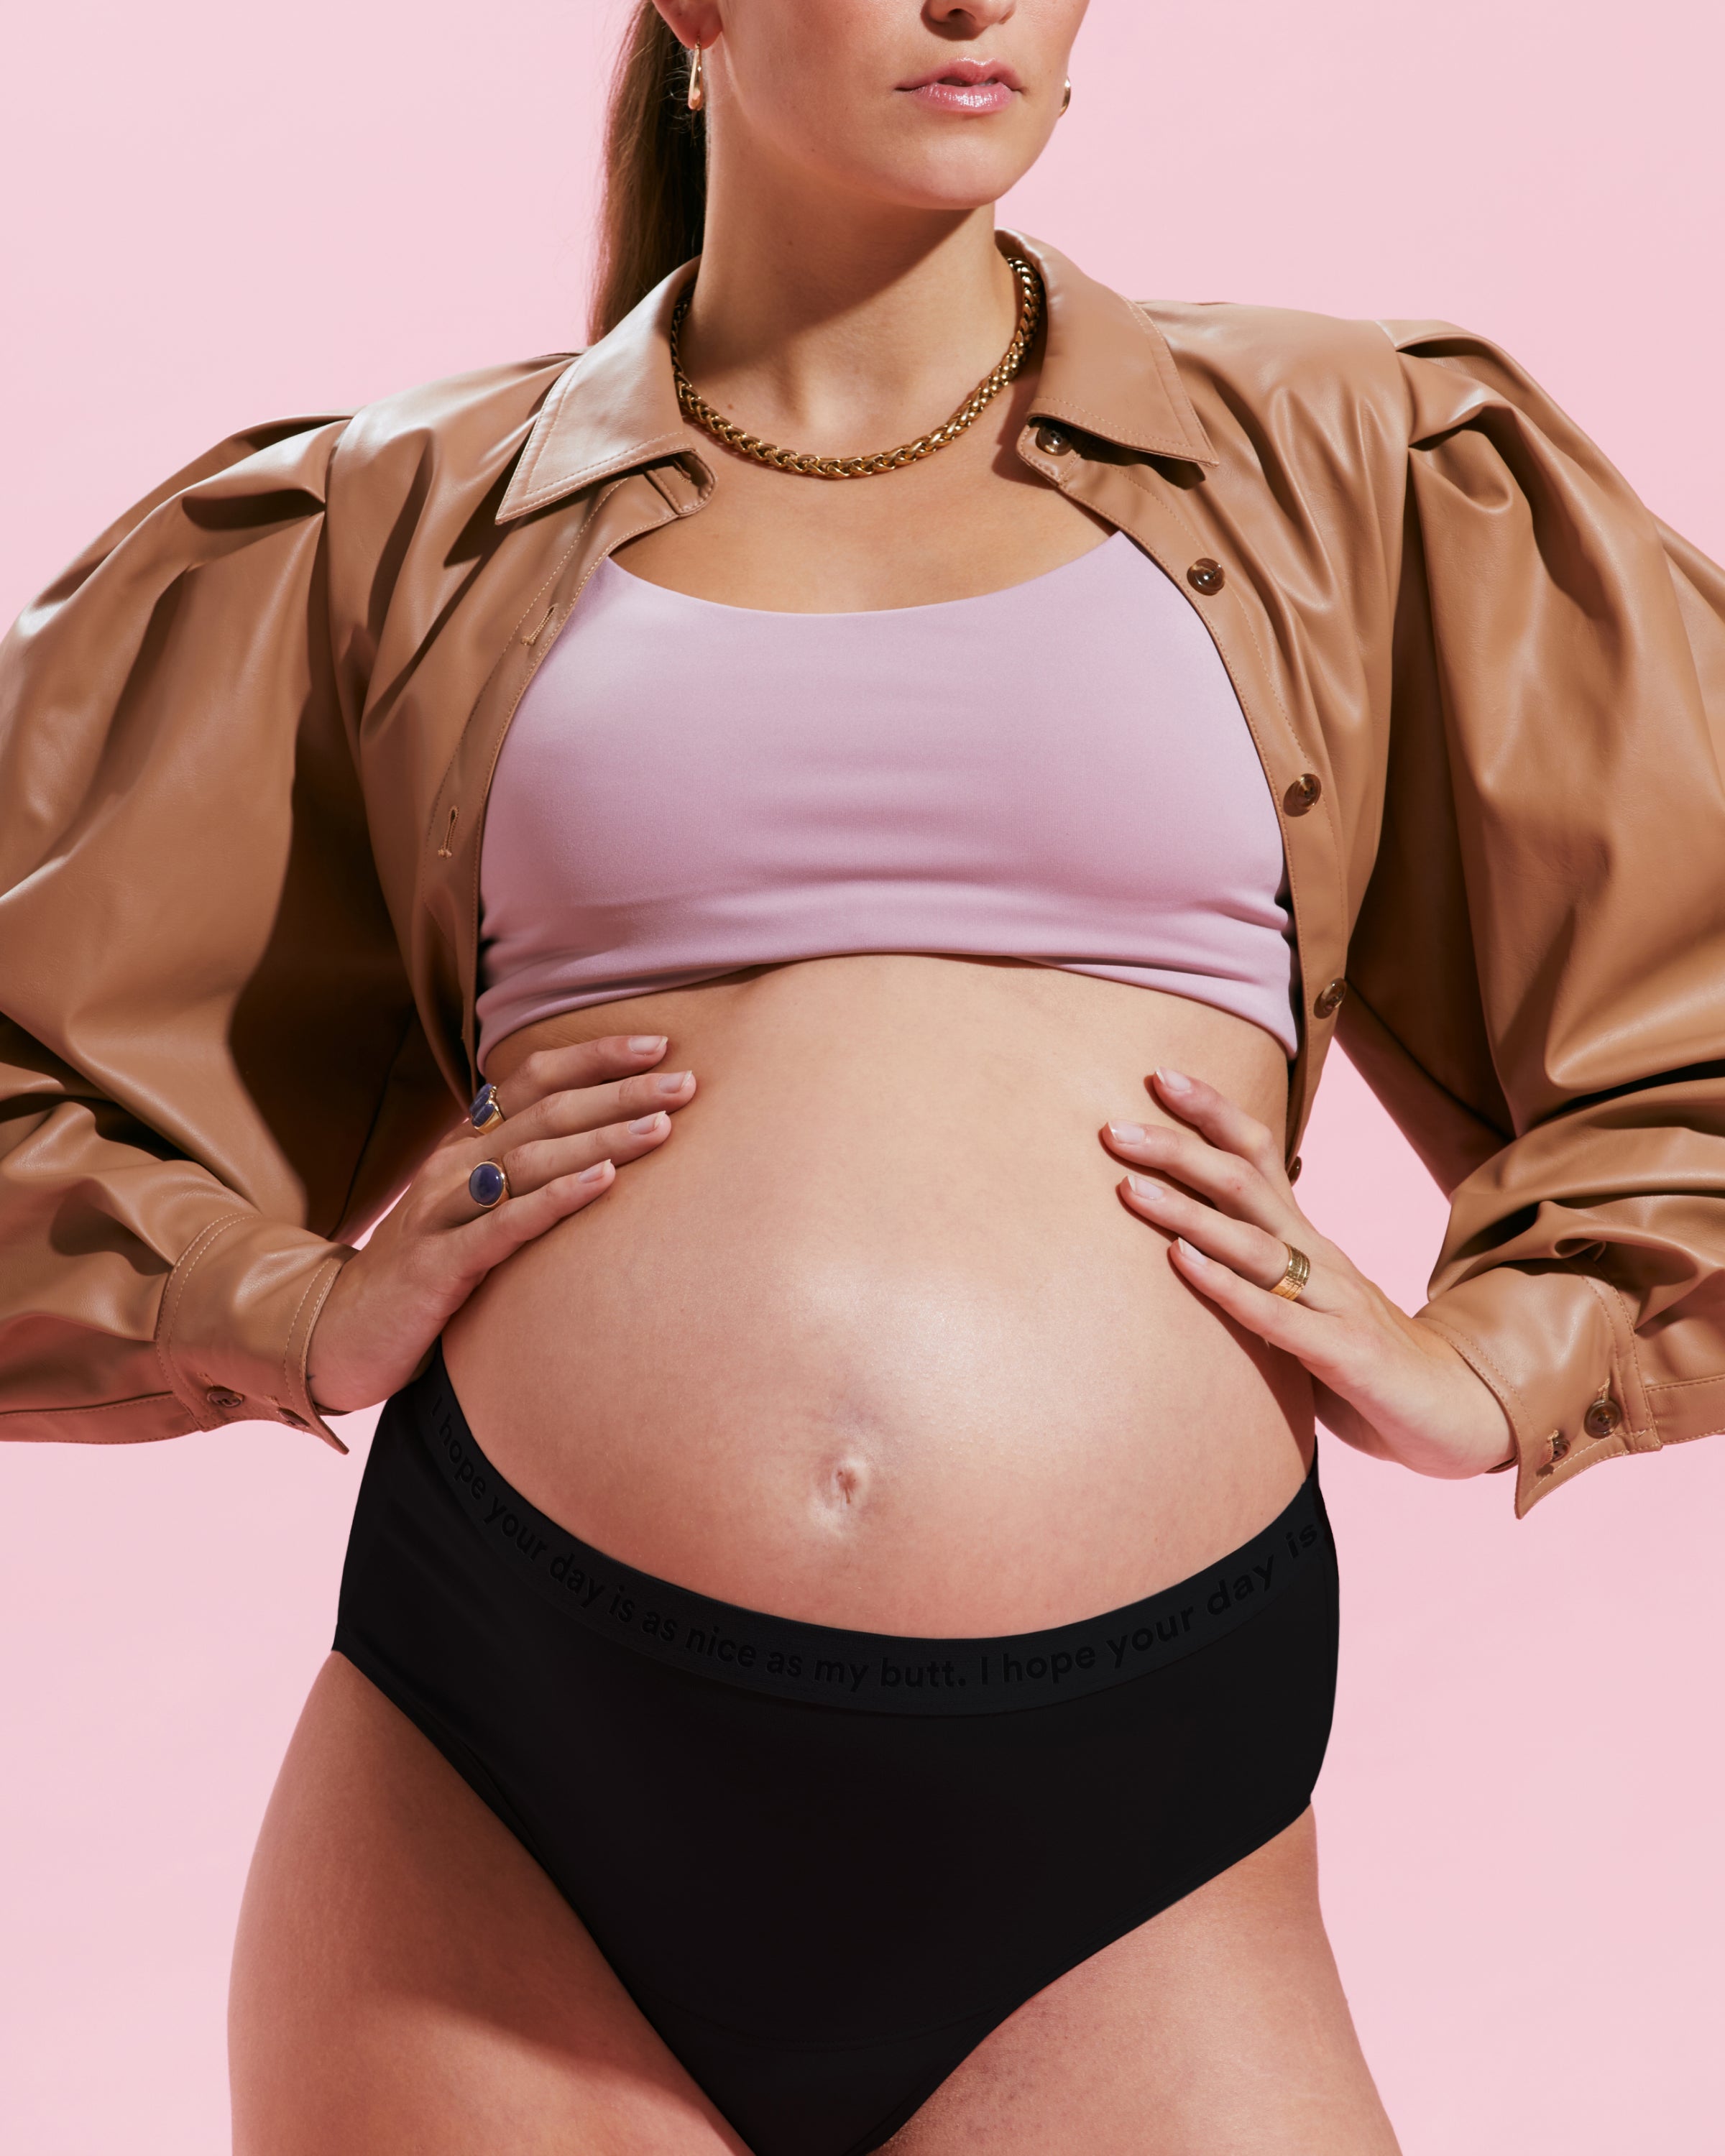 MammaPanty – Absorbent Maternity Underwear